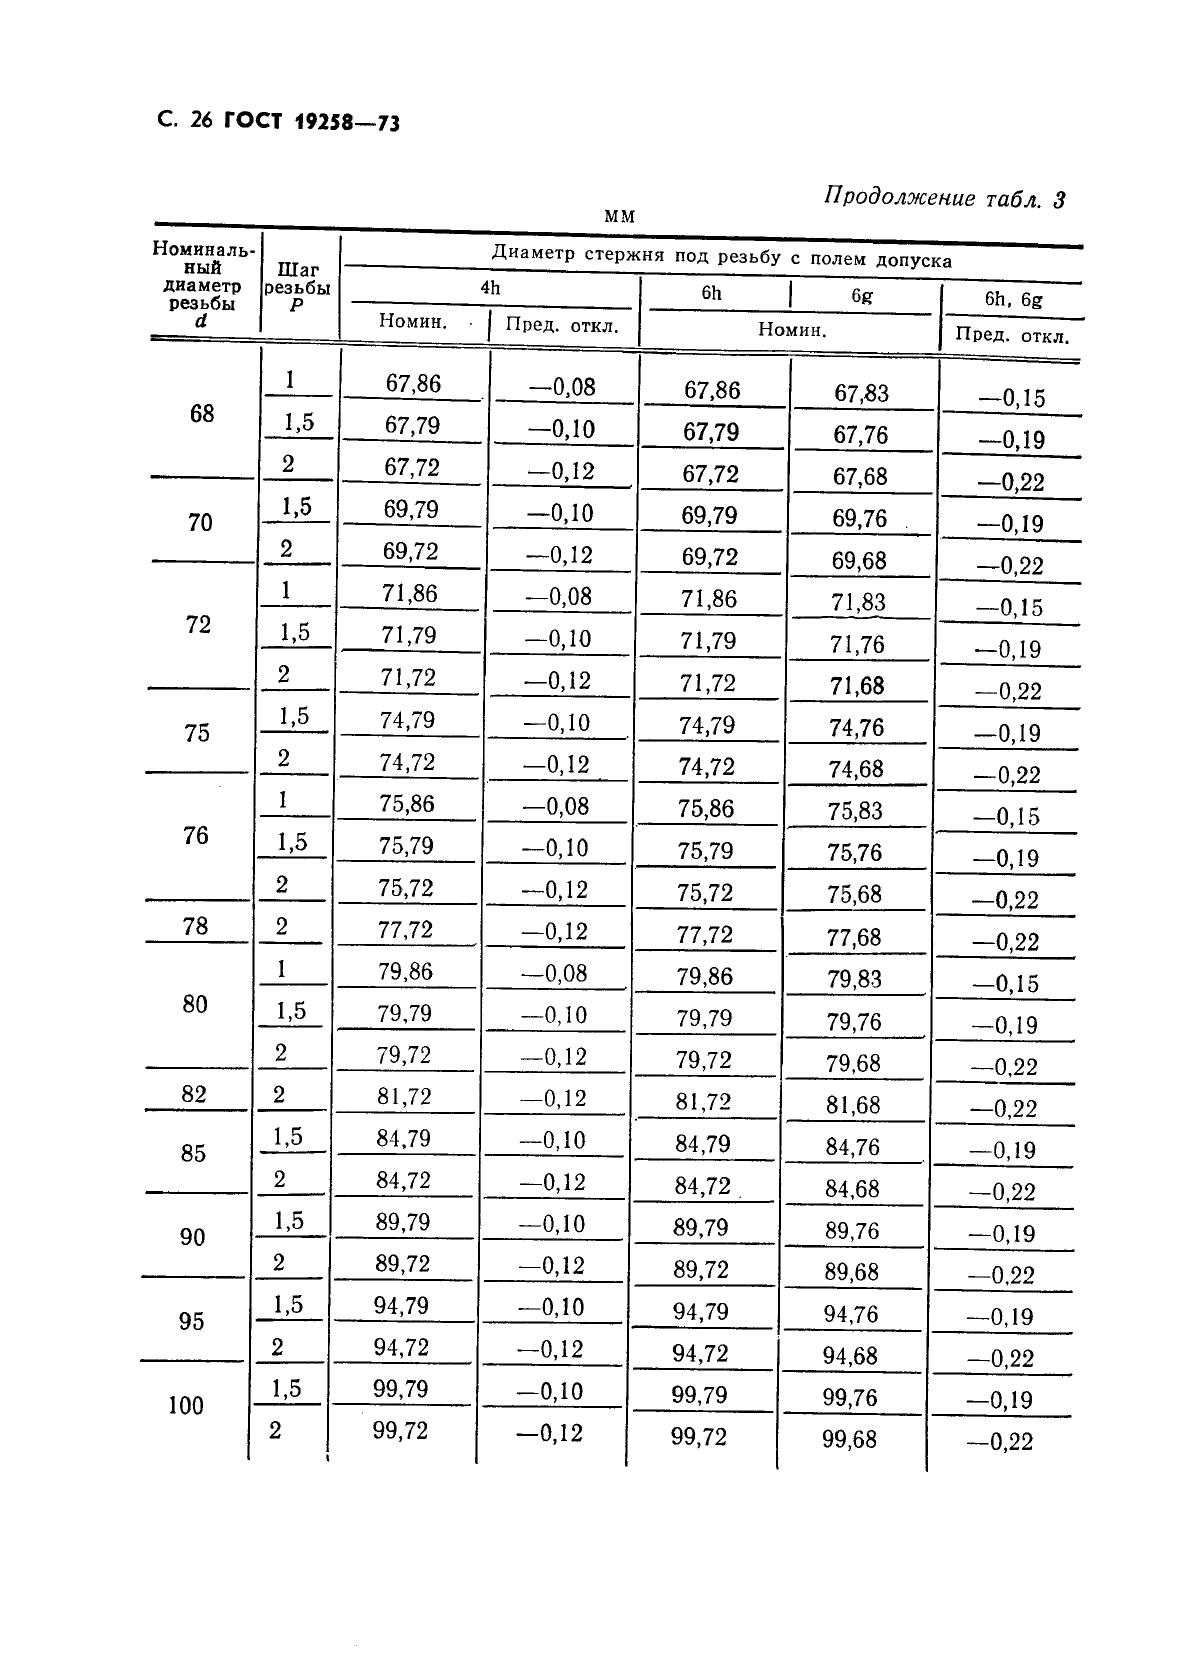  19258-73,  28.